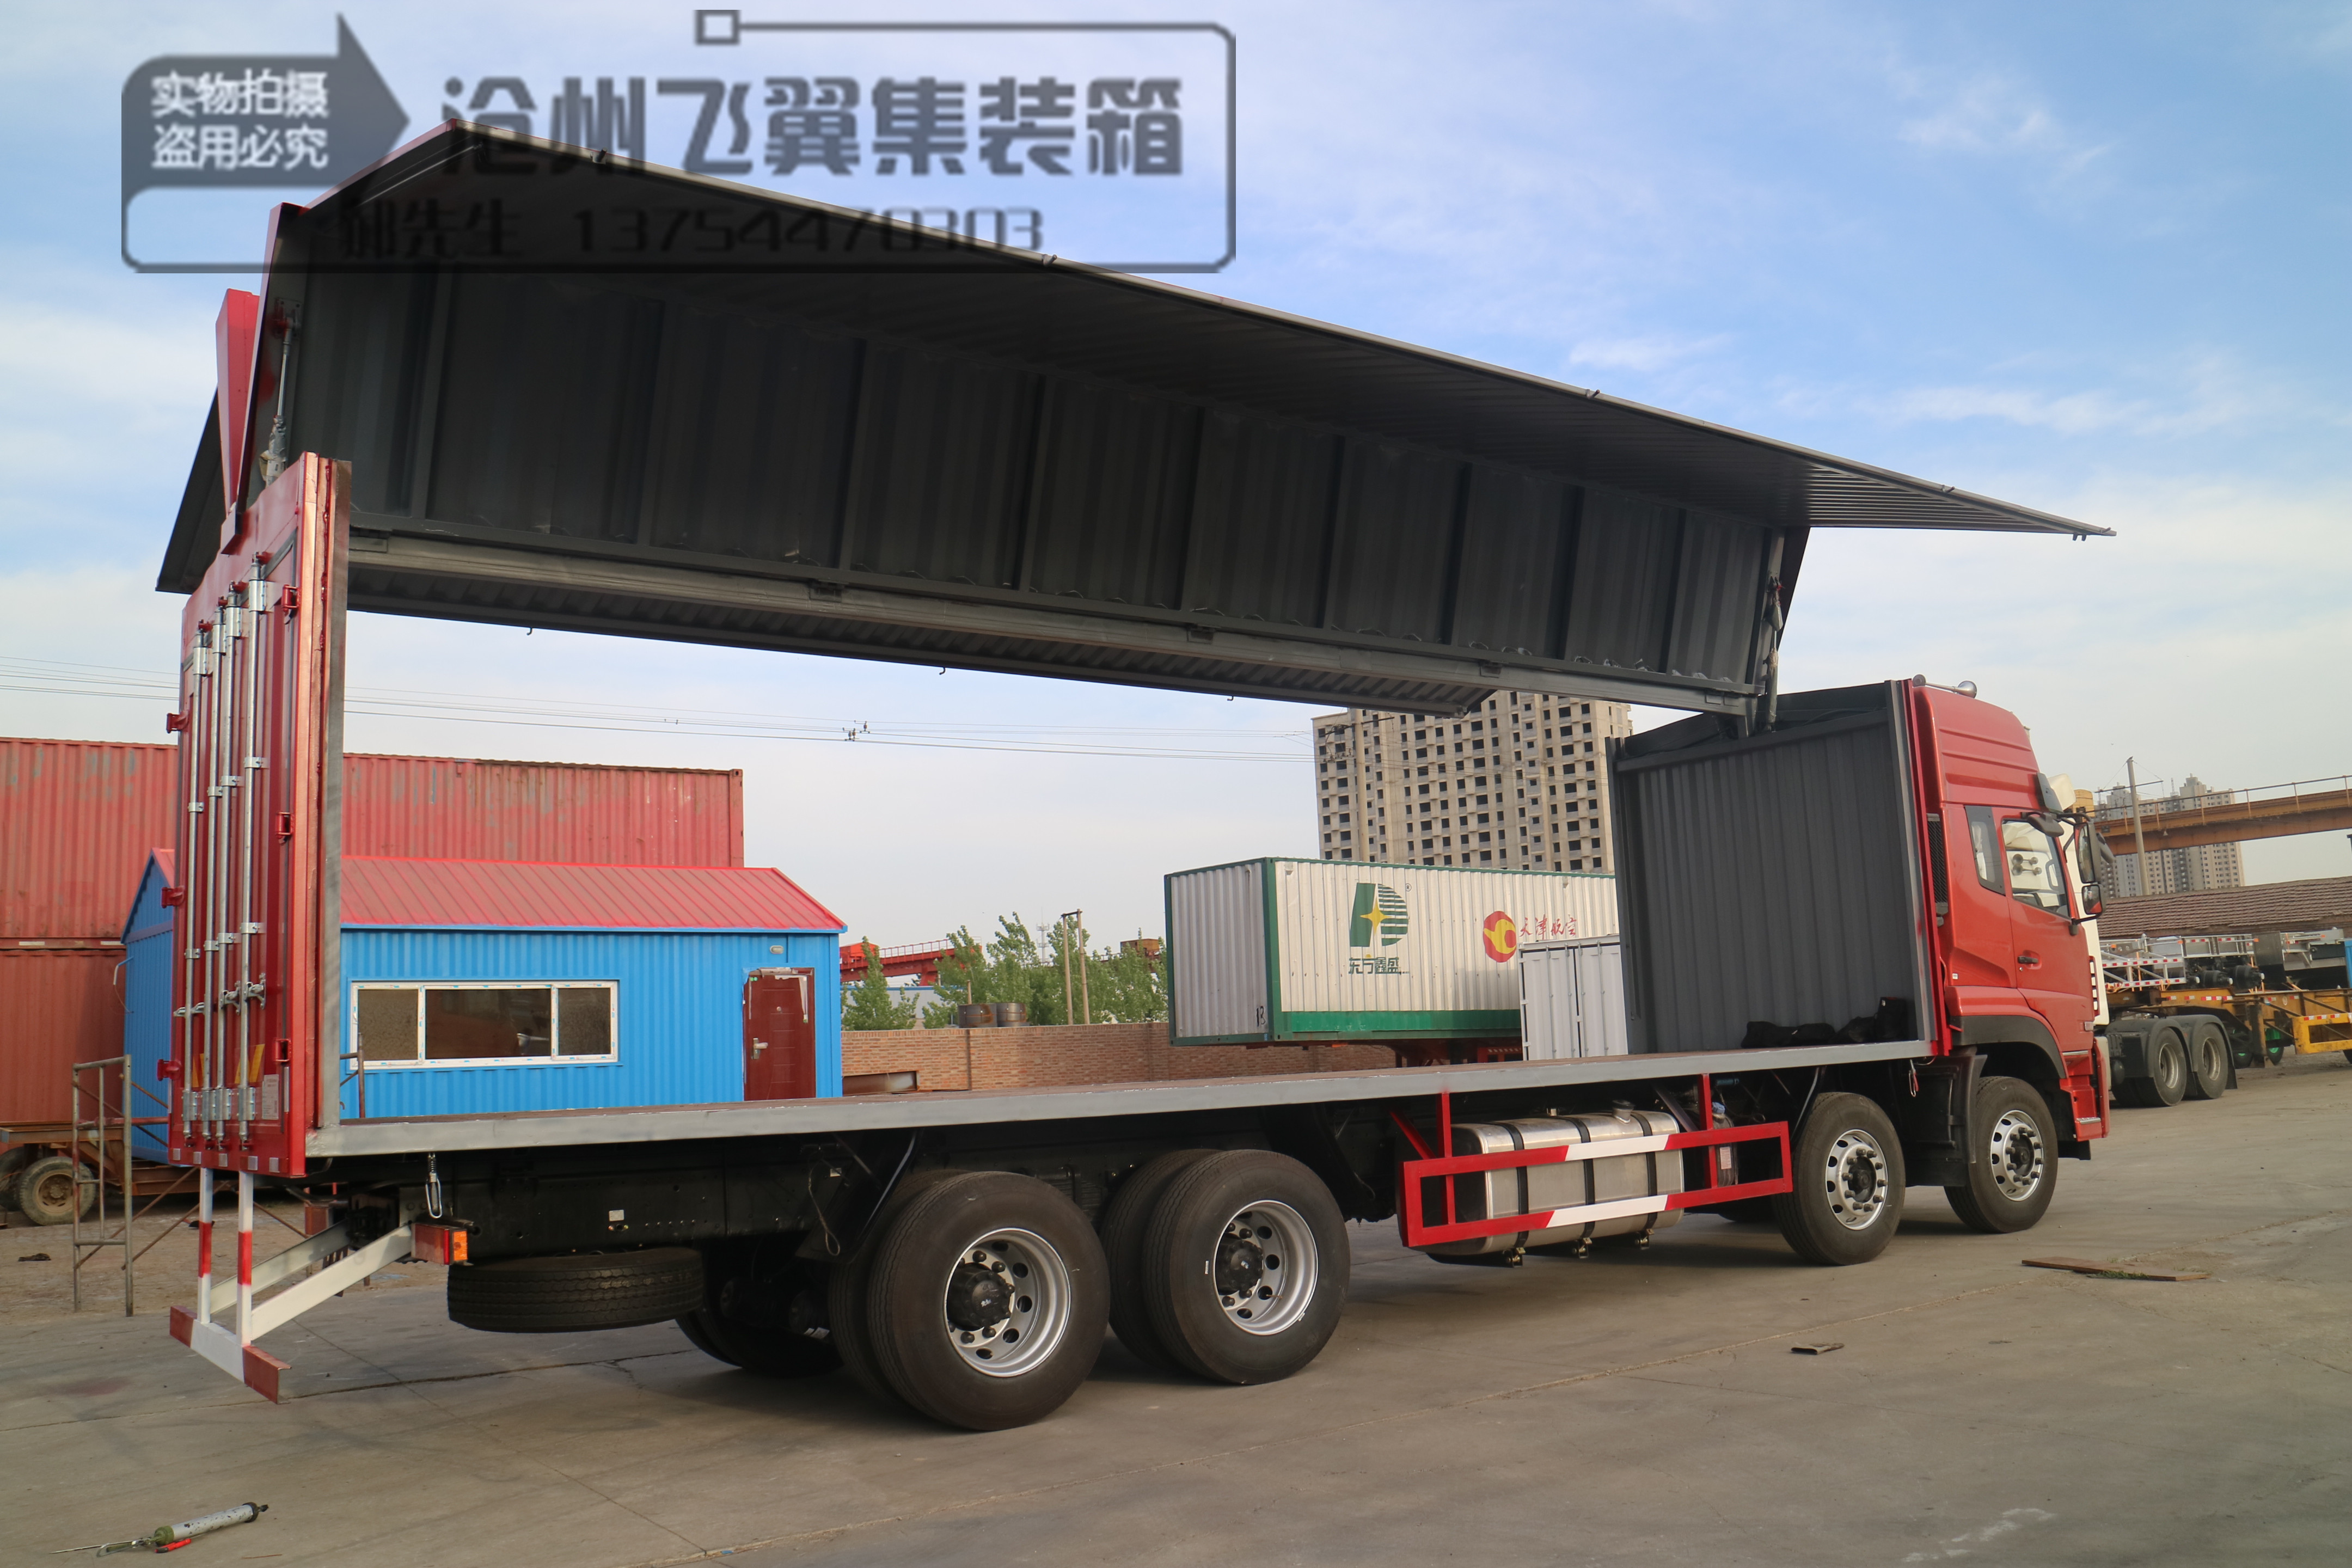 8.6米廂式貨車集裝箱   可開啟運輸車廂集裝箱